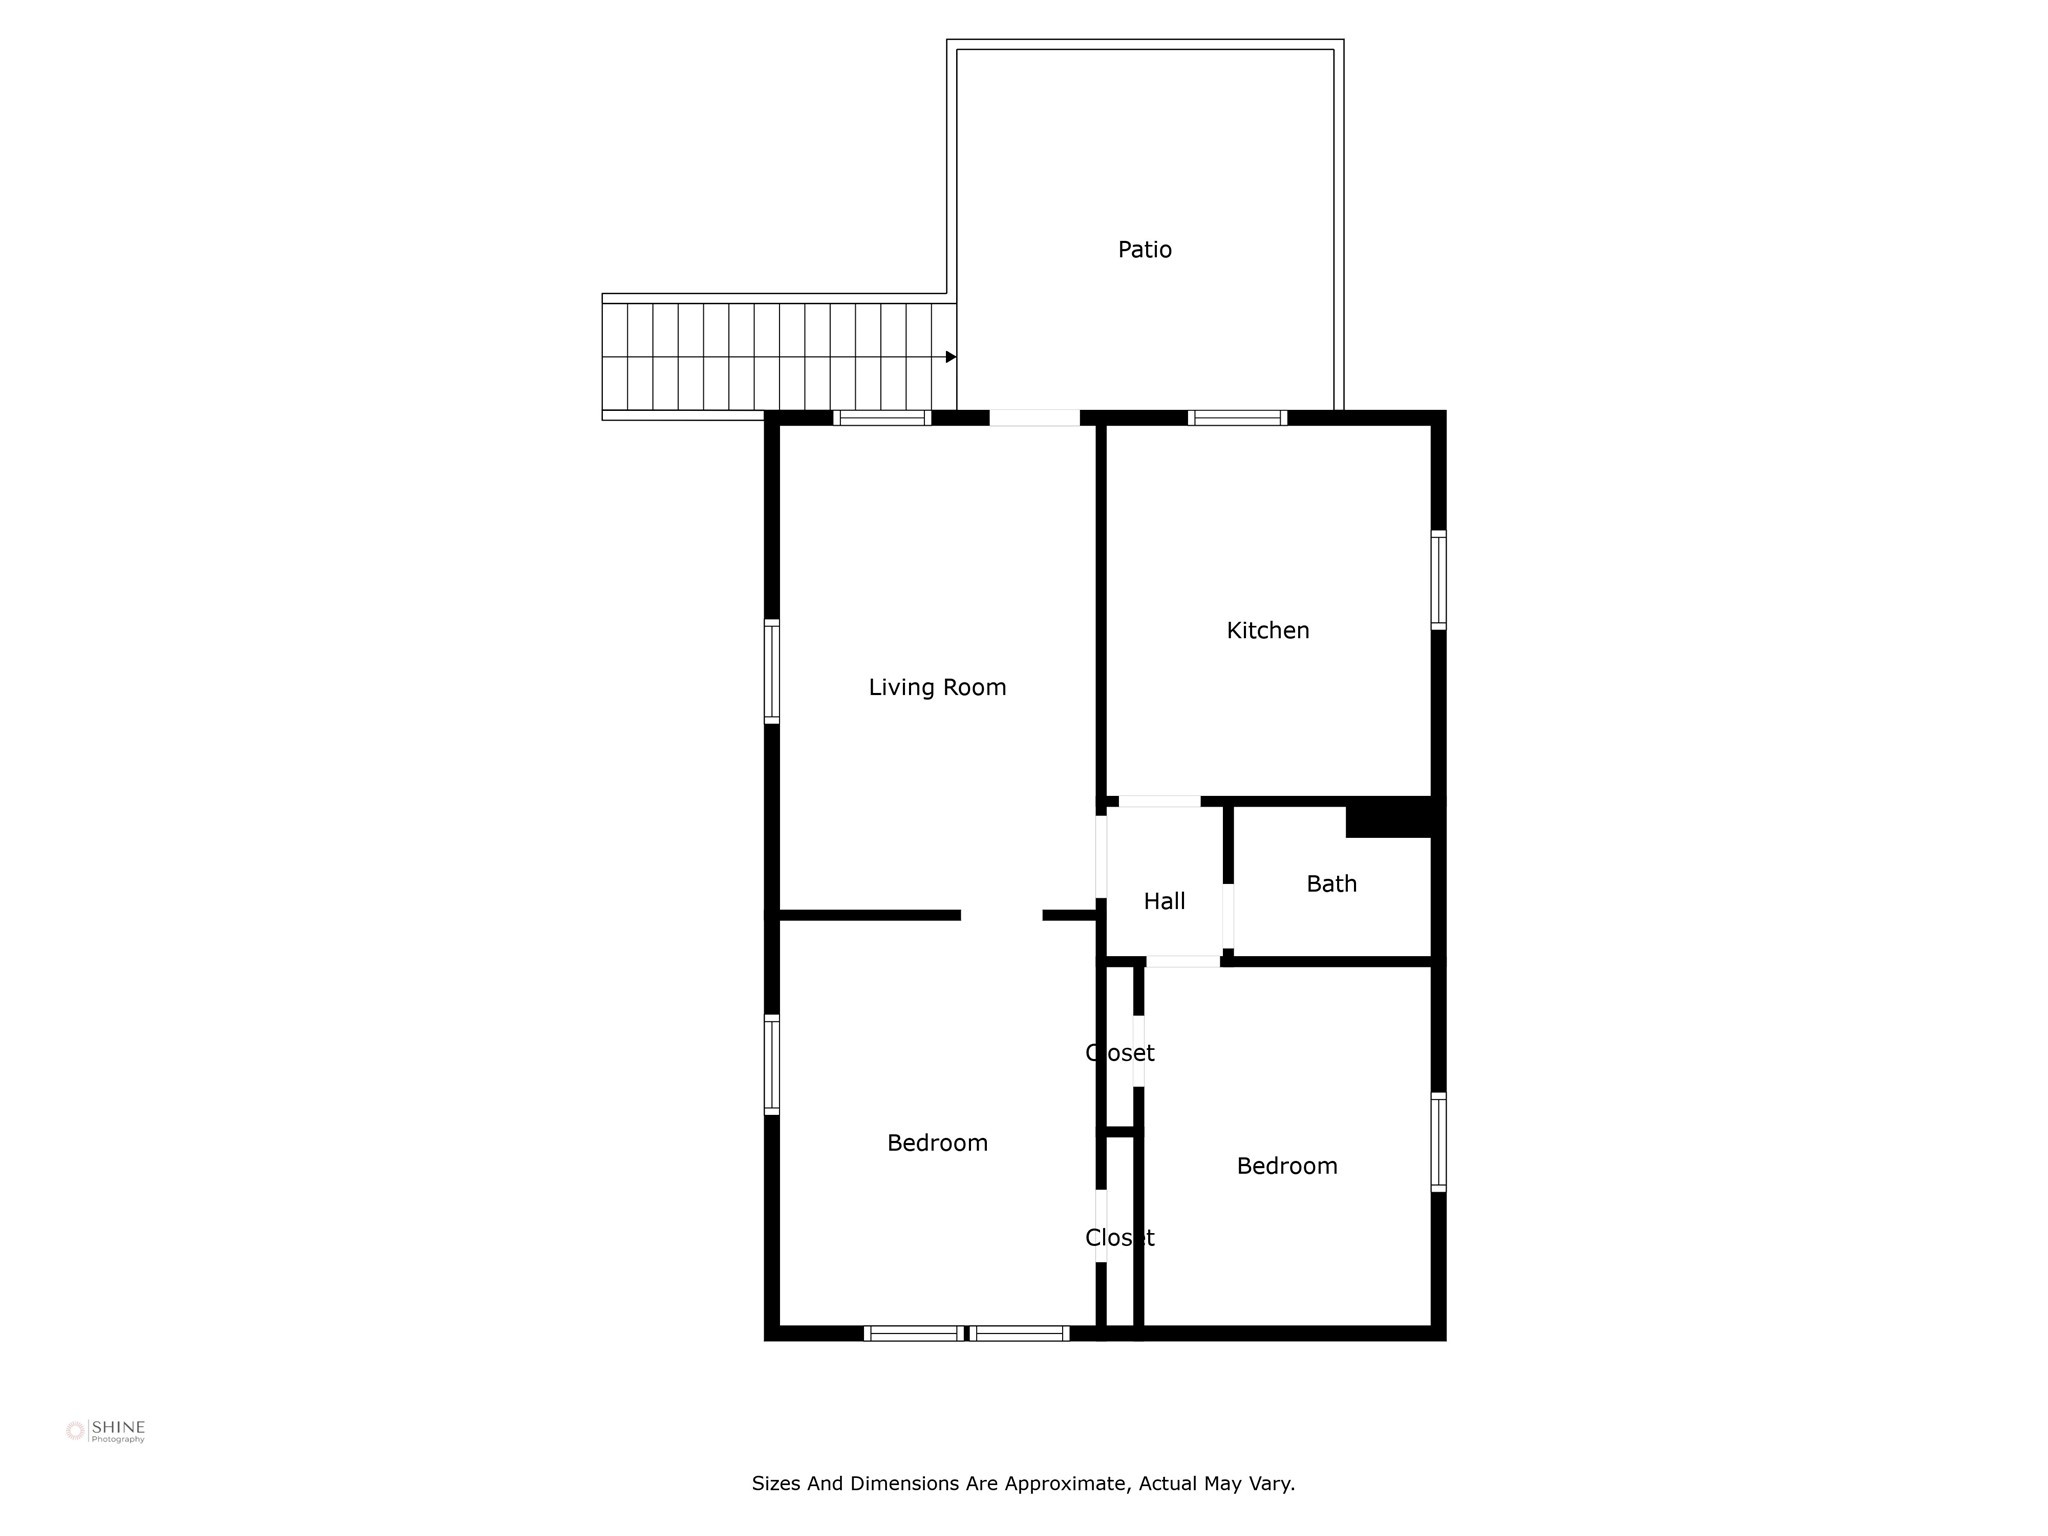 Floor plan of garage apartment.